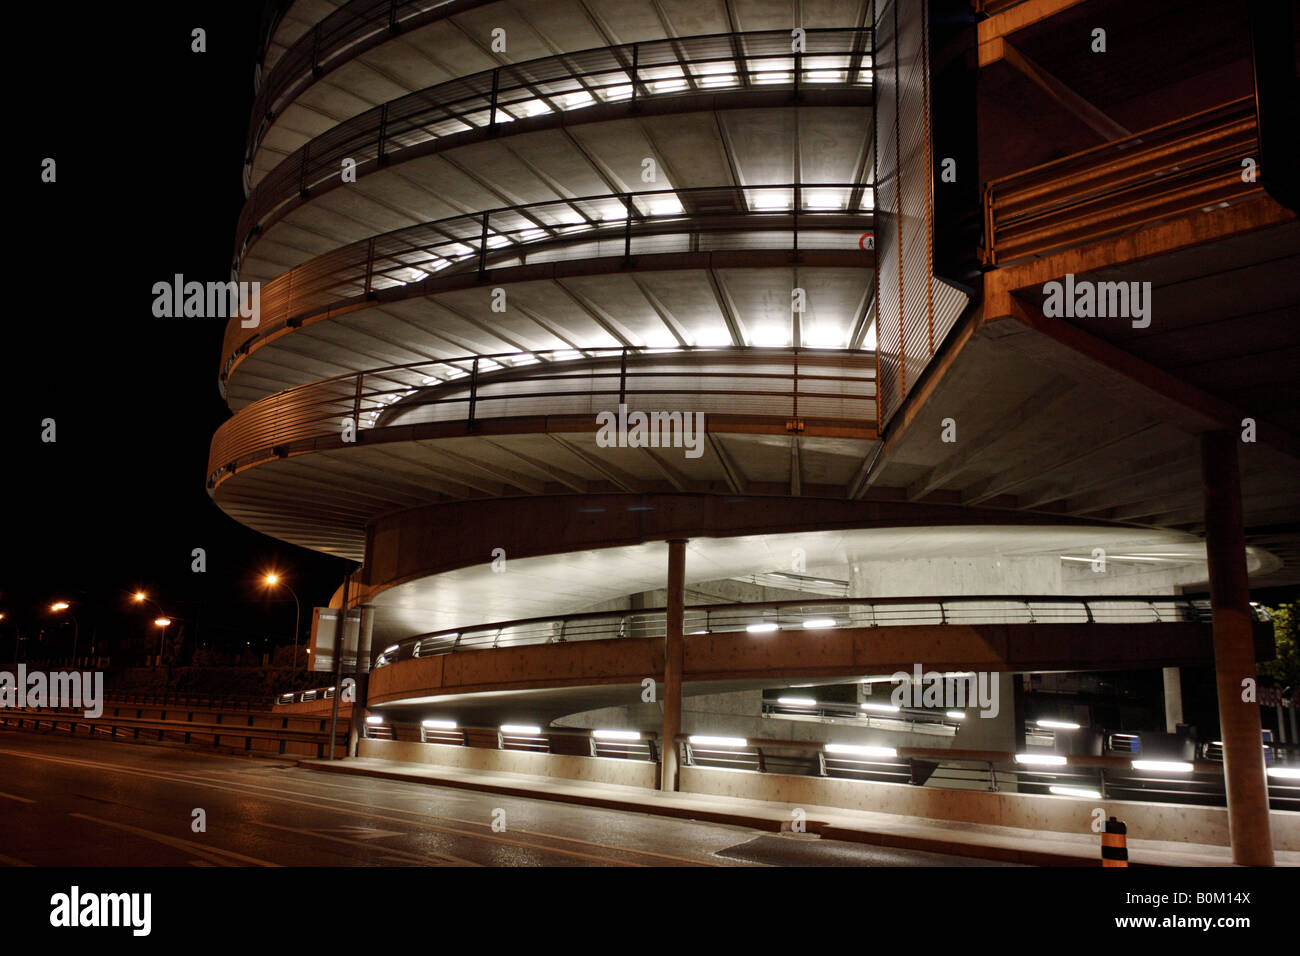 Un aparcamiento de varios pisos iluminados en Ginebra, Suiza en la noche Foto de stock